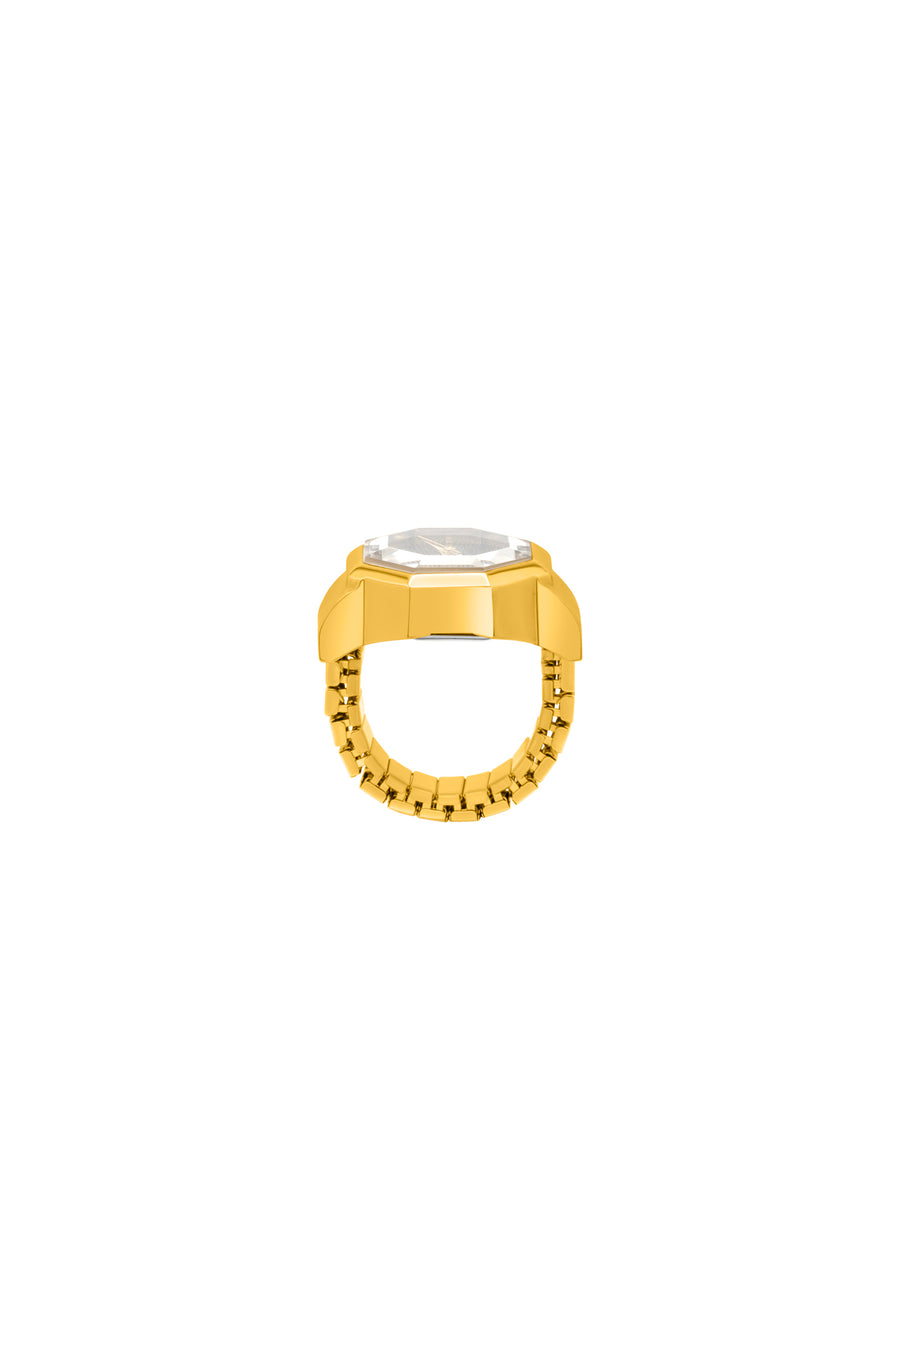 Malachite Carisma Watch Ring